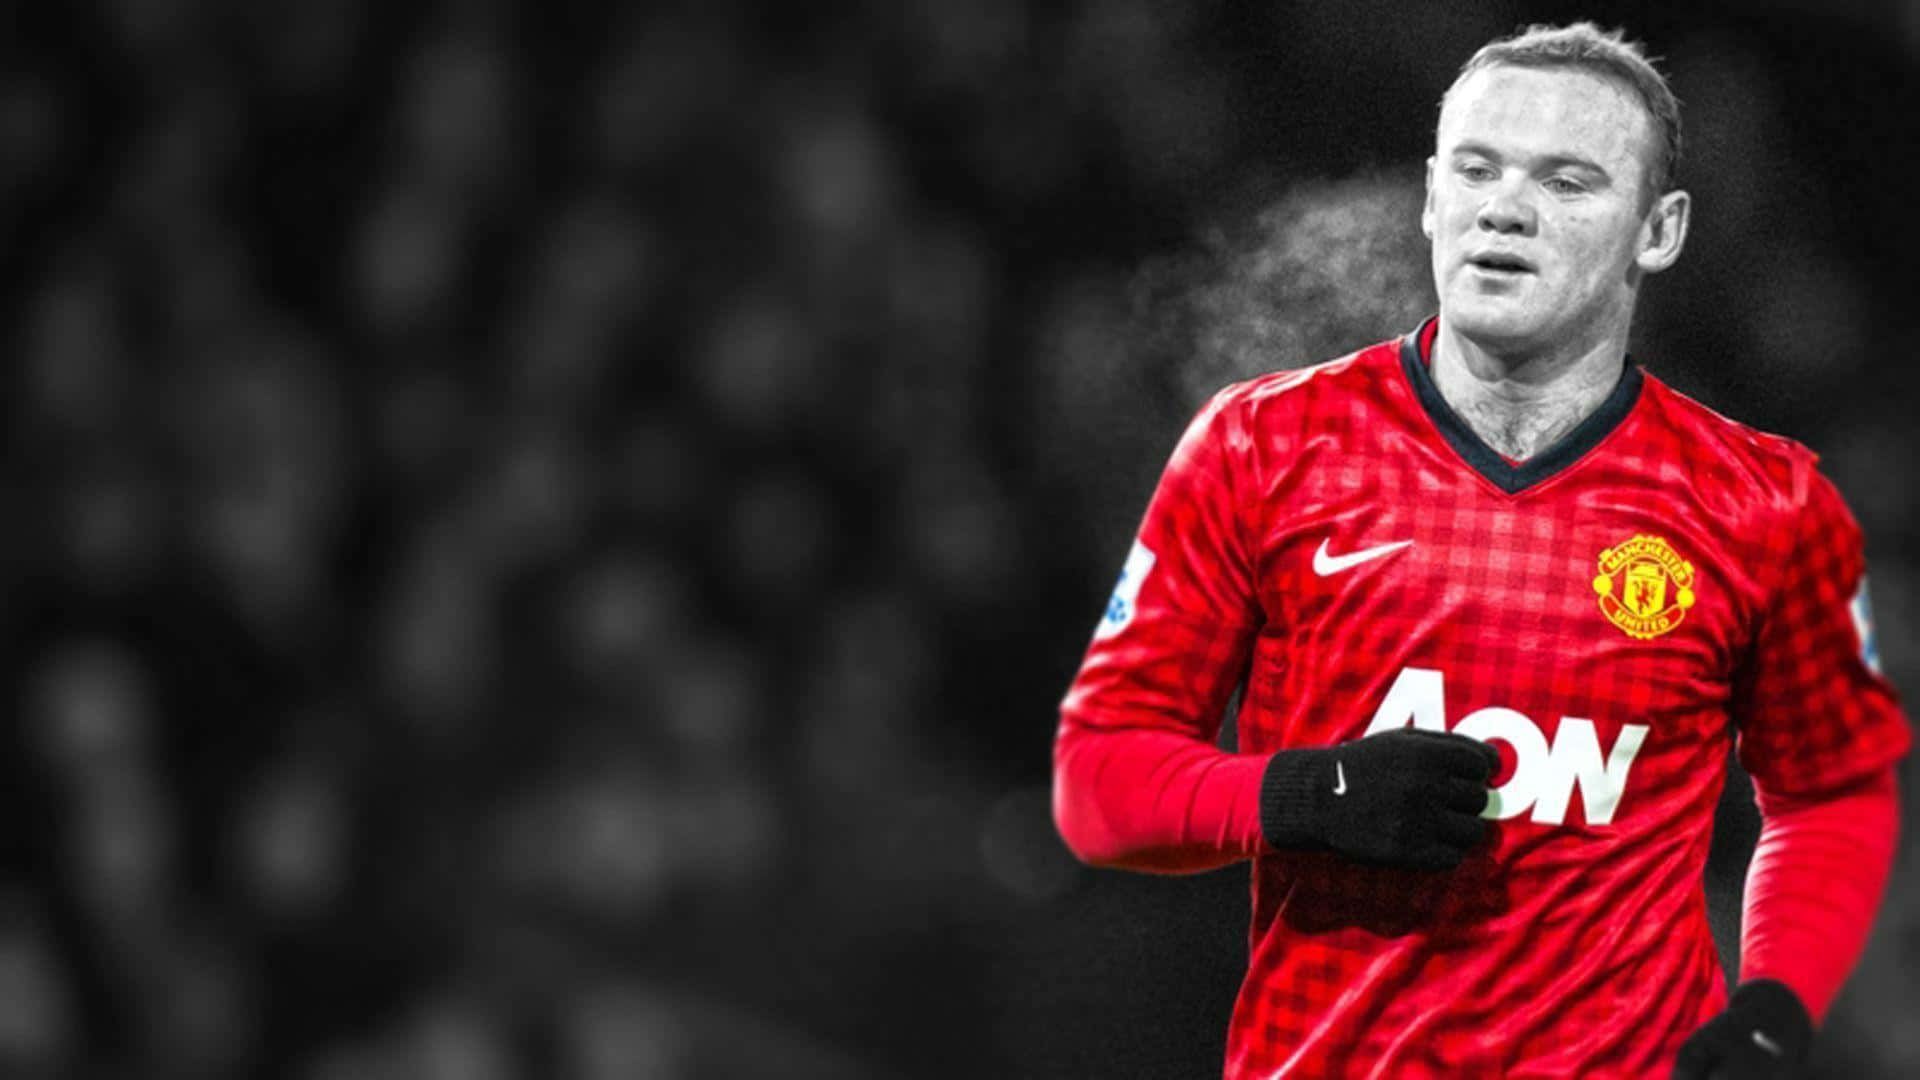 Professionellerfußballspieler Wayne Rooney